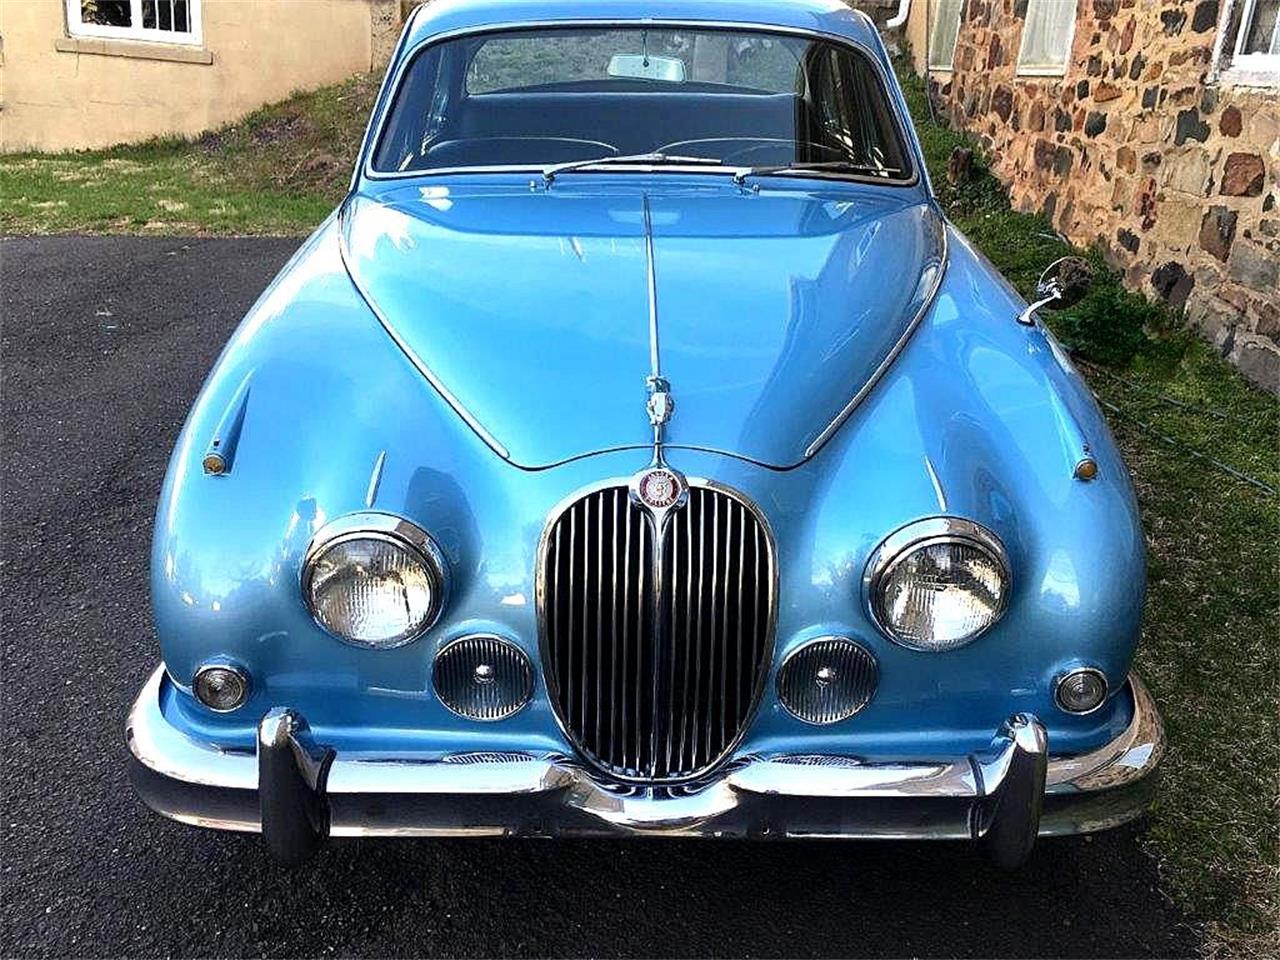 1963 Jaguar Mark II for sale in Stratford, NJ ...